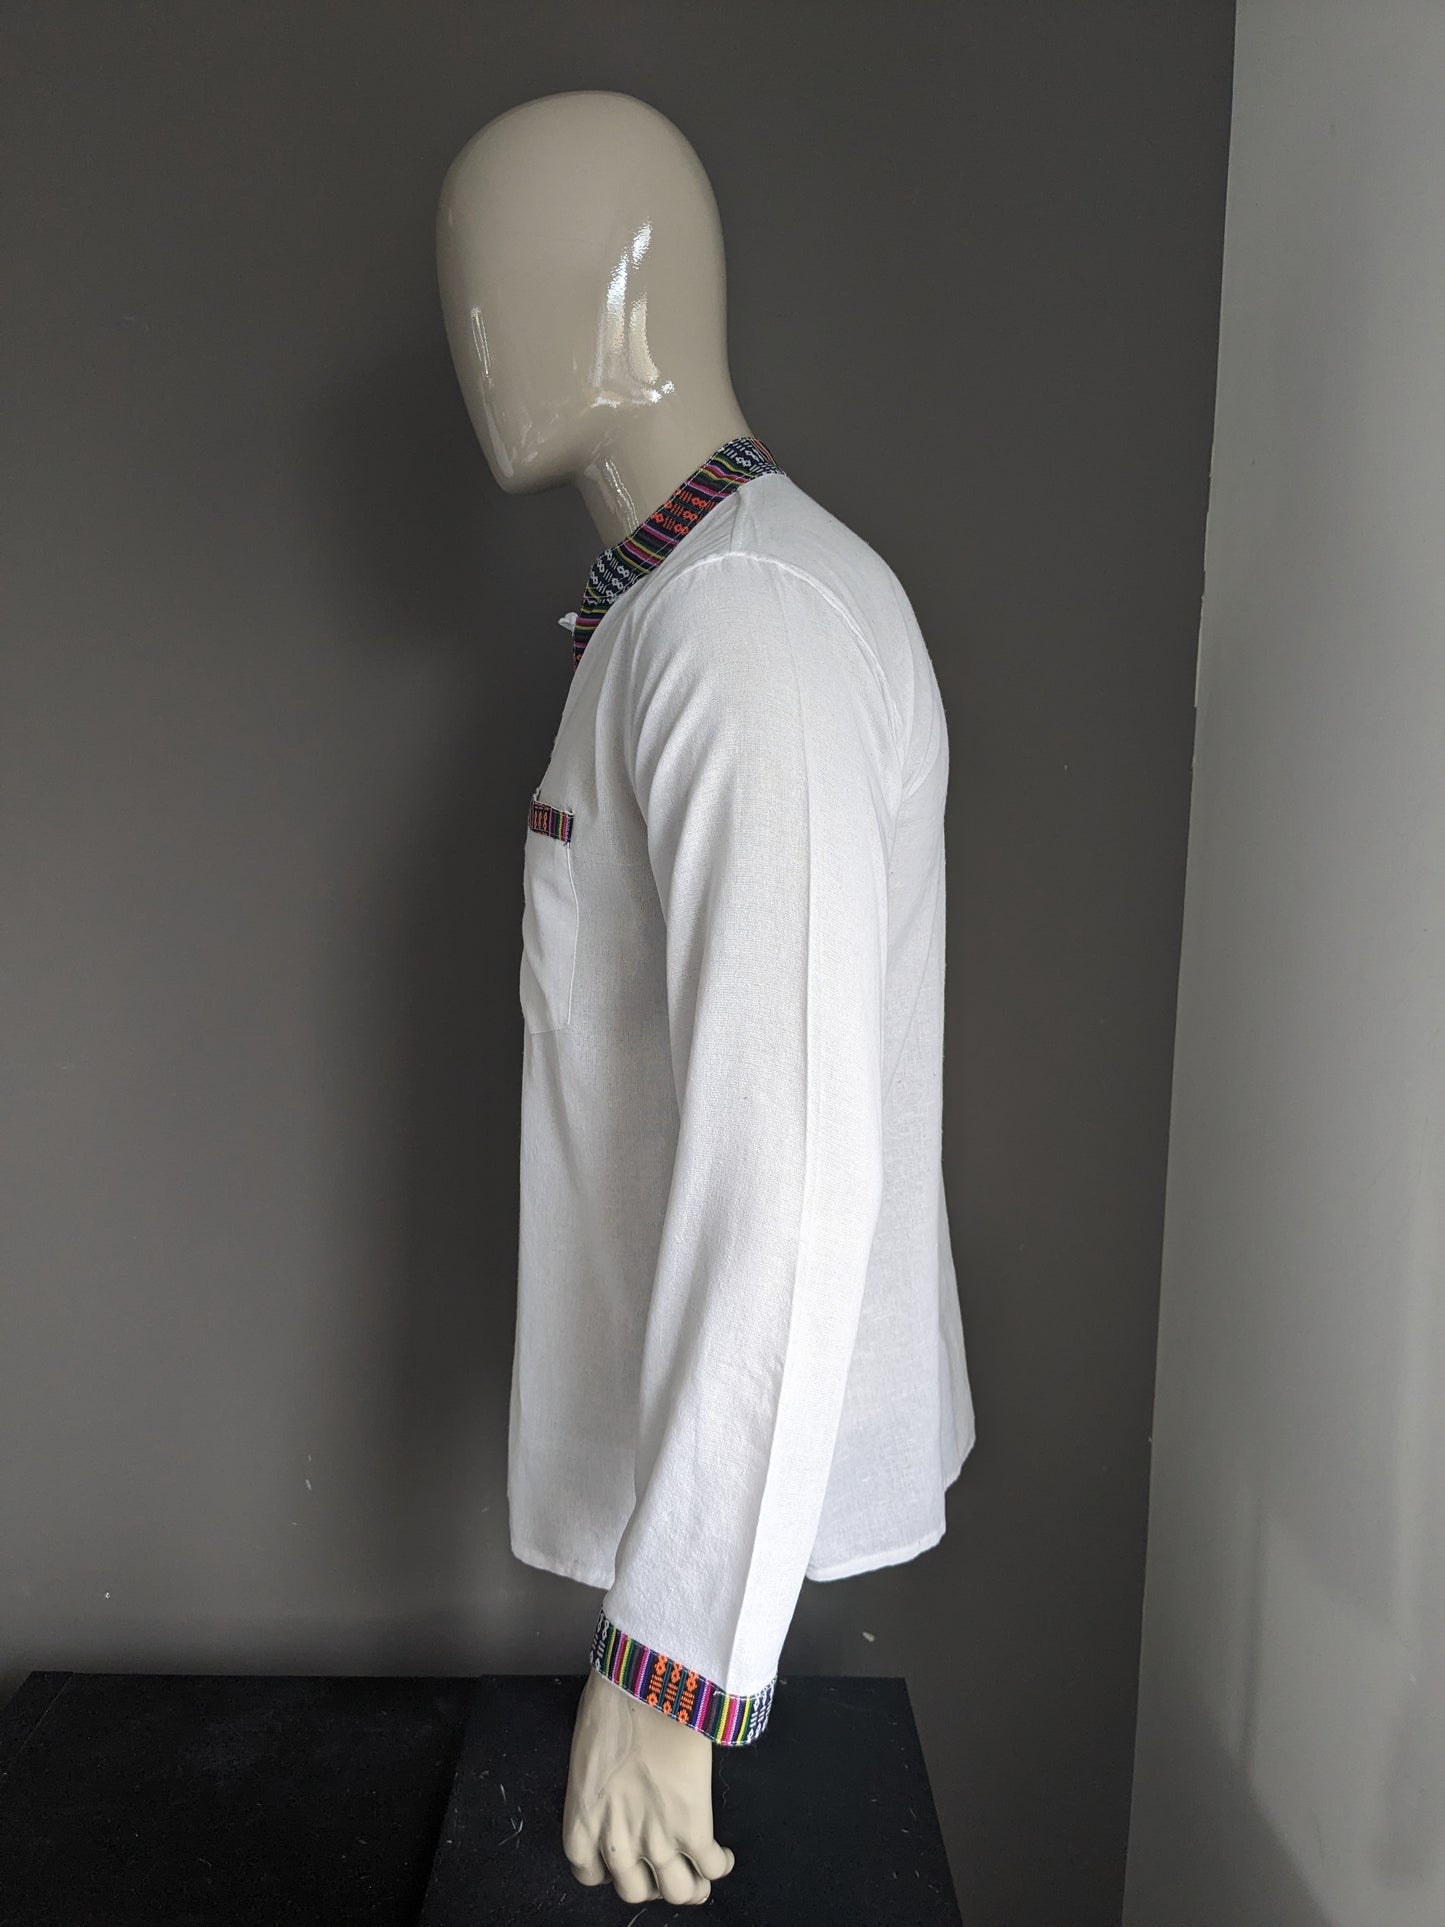 Camicia vintage con mao / agricoltore / collare in piedi. Bianco con bordi colorati. Taglia M.